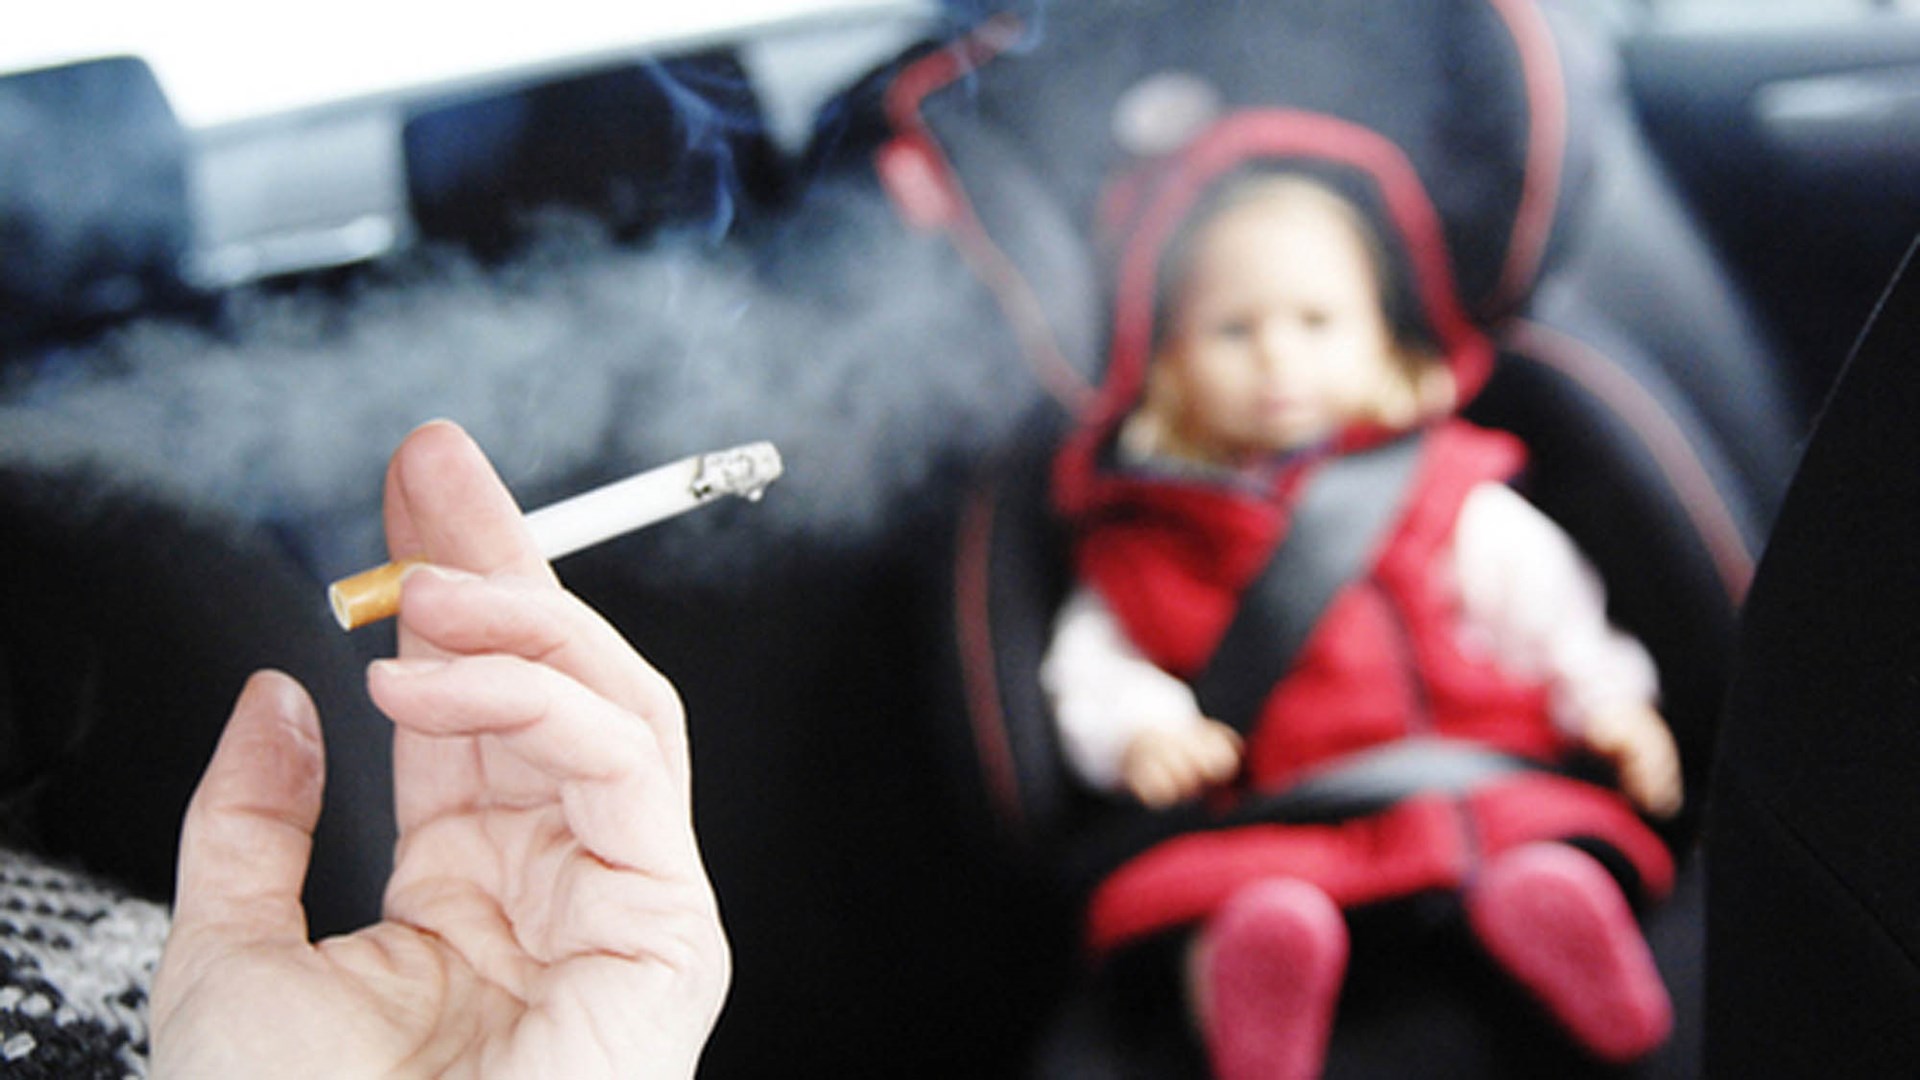 Τσουχτερά πρόστιμα για το κάπνισμα στο αυτοκίνητο παρουσία παιδιών – ΒΙΝΤΕΟ